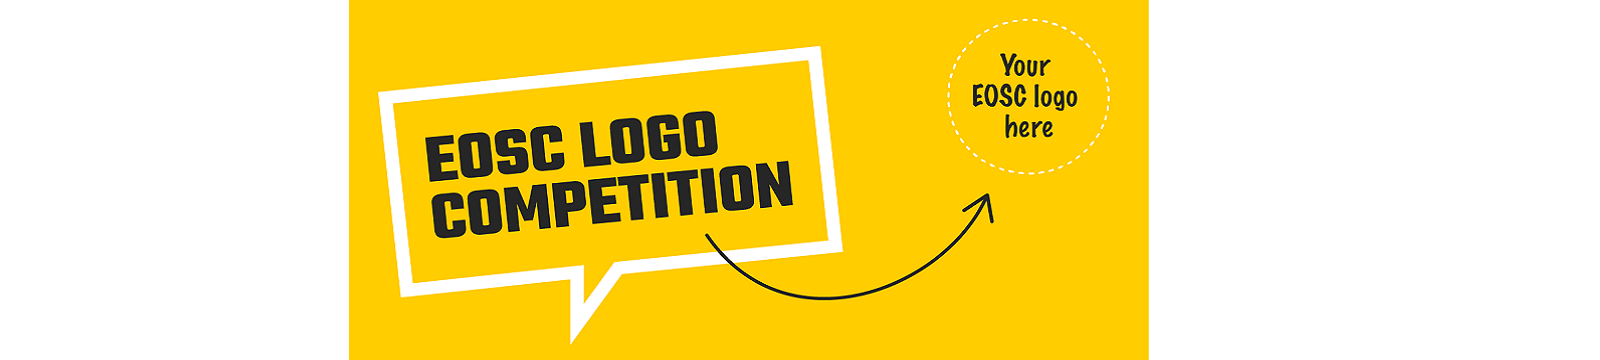 Aperto il concorso per l’ideazione del logo per l’EOSC, in palio 5.000 euro